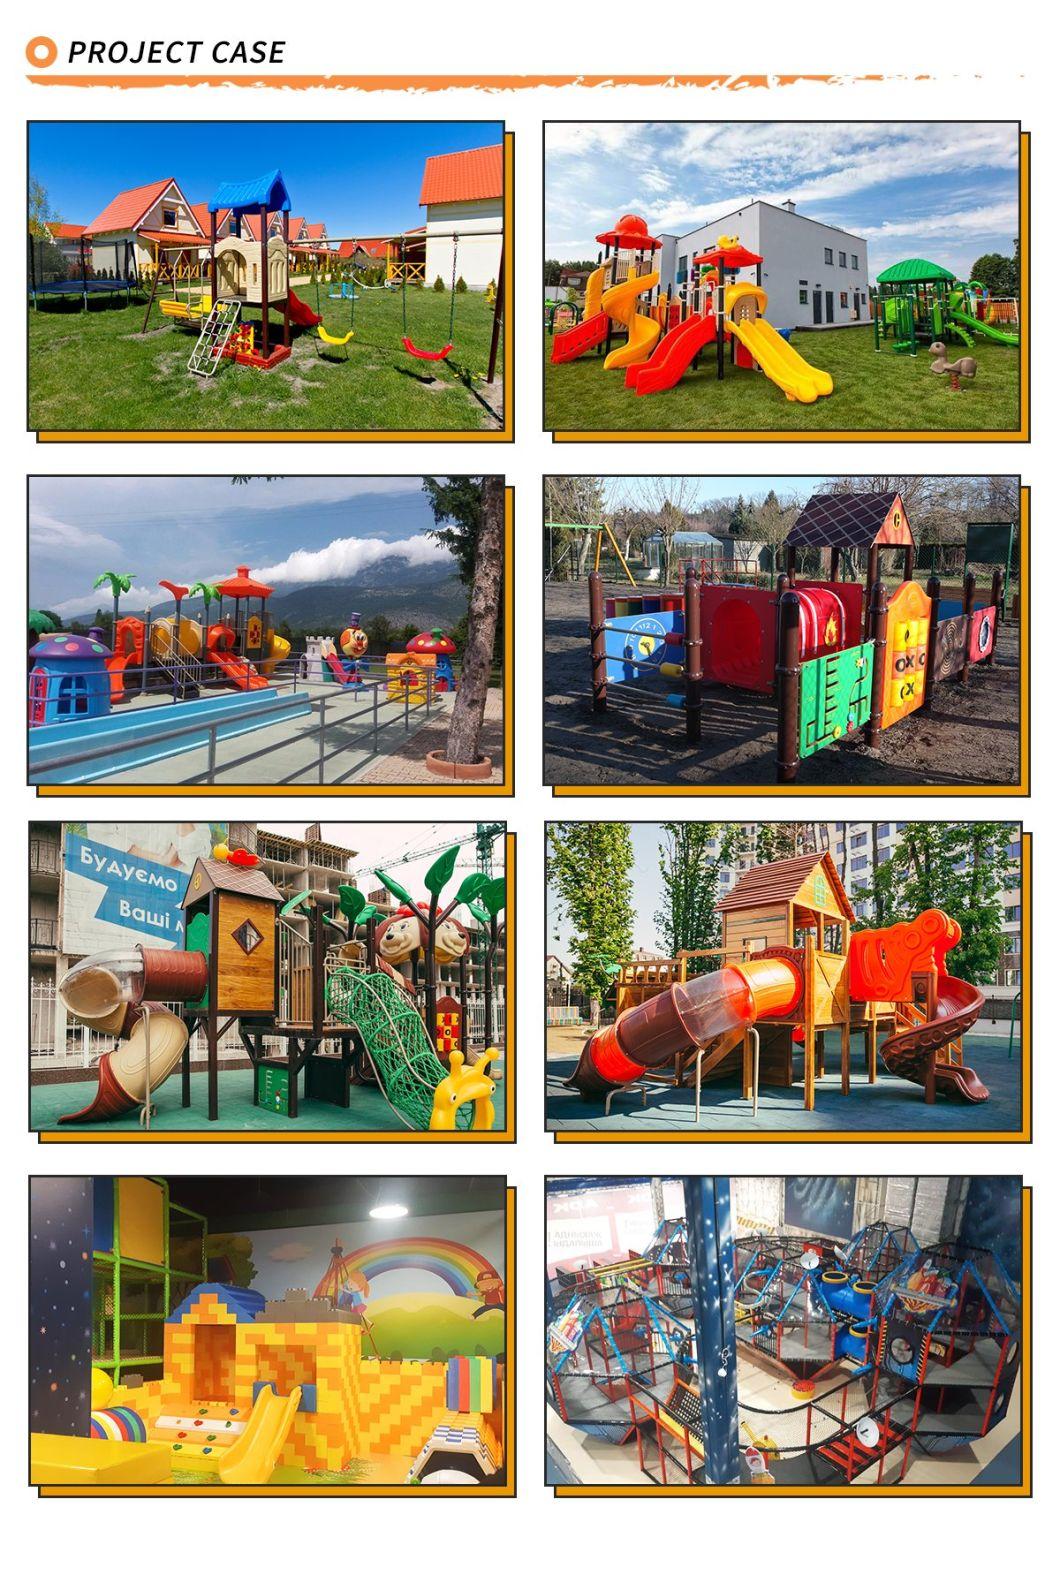 Sports Series Garden Game Outdoor Playground Kids Slide